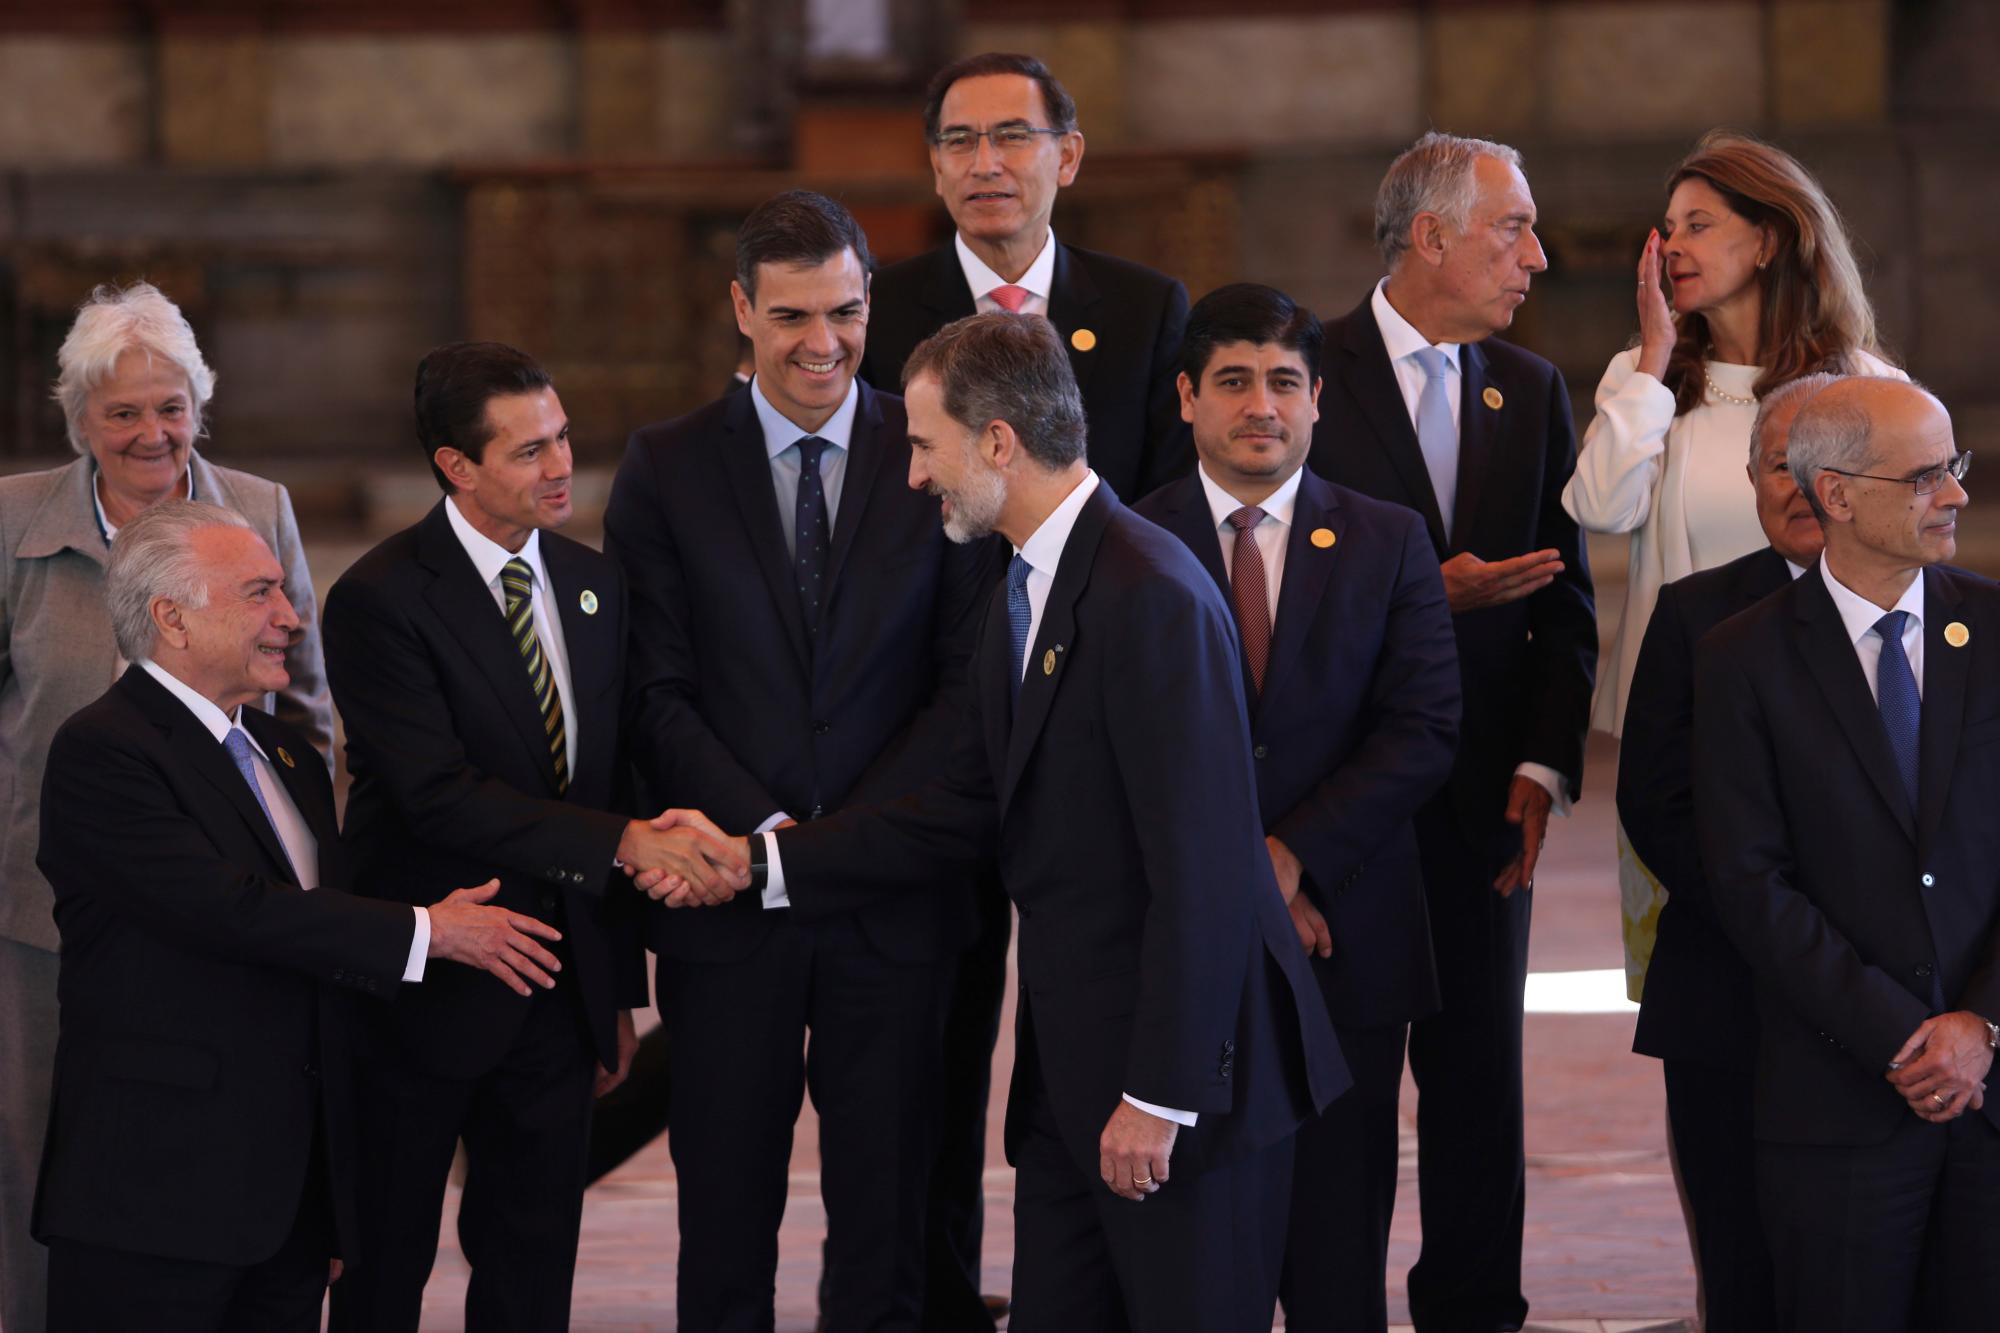 El rey Felipe de España, centro, le da la mano al presidente de México, Enrique Peña Nieto, flanqueado por el presidente de Brasil, Michel Temer, a la izquierda, al presidente de Perú, Martín Vizcarra, al centro de la espalda, y al presidente de Costa Rica, Carlos Alvarado, a la derecha.